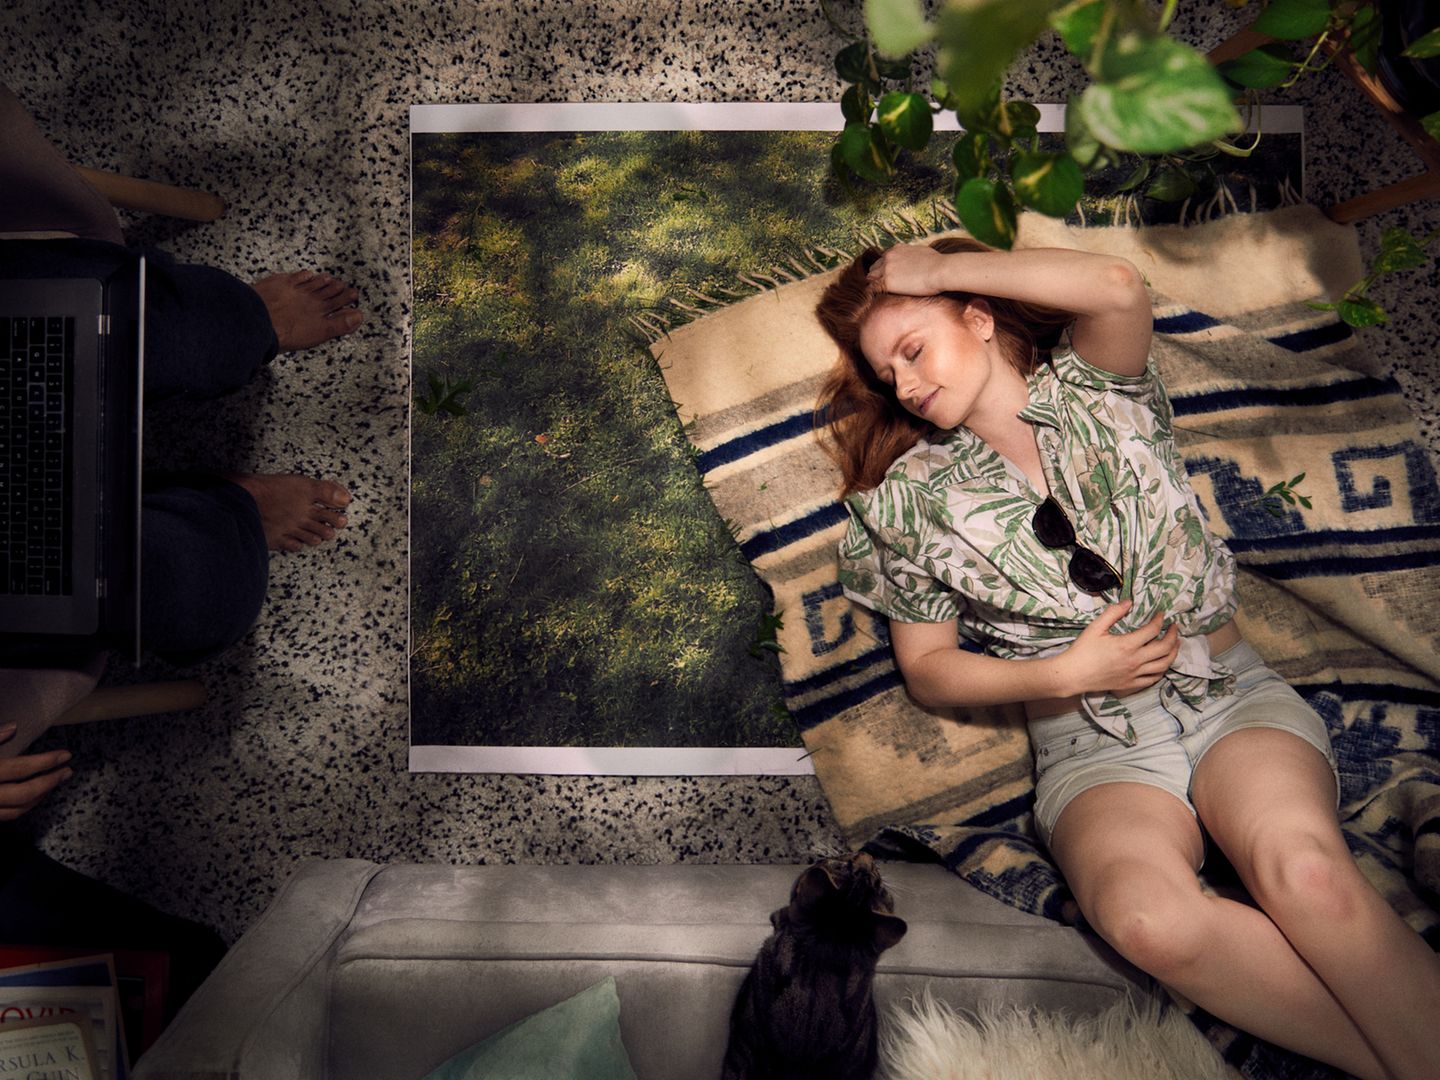 Art Photography Award: Frau liegt auf Boden